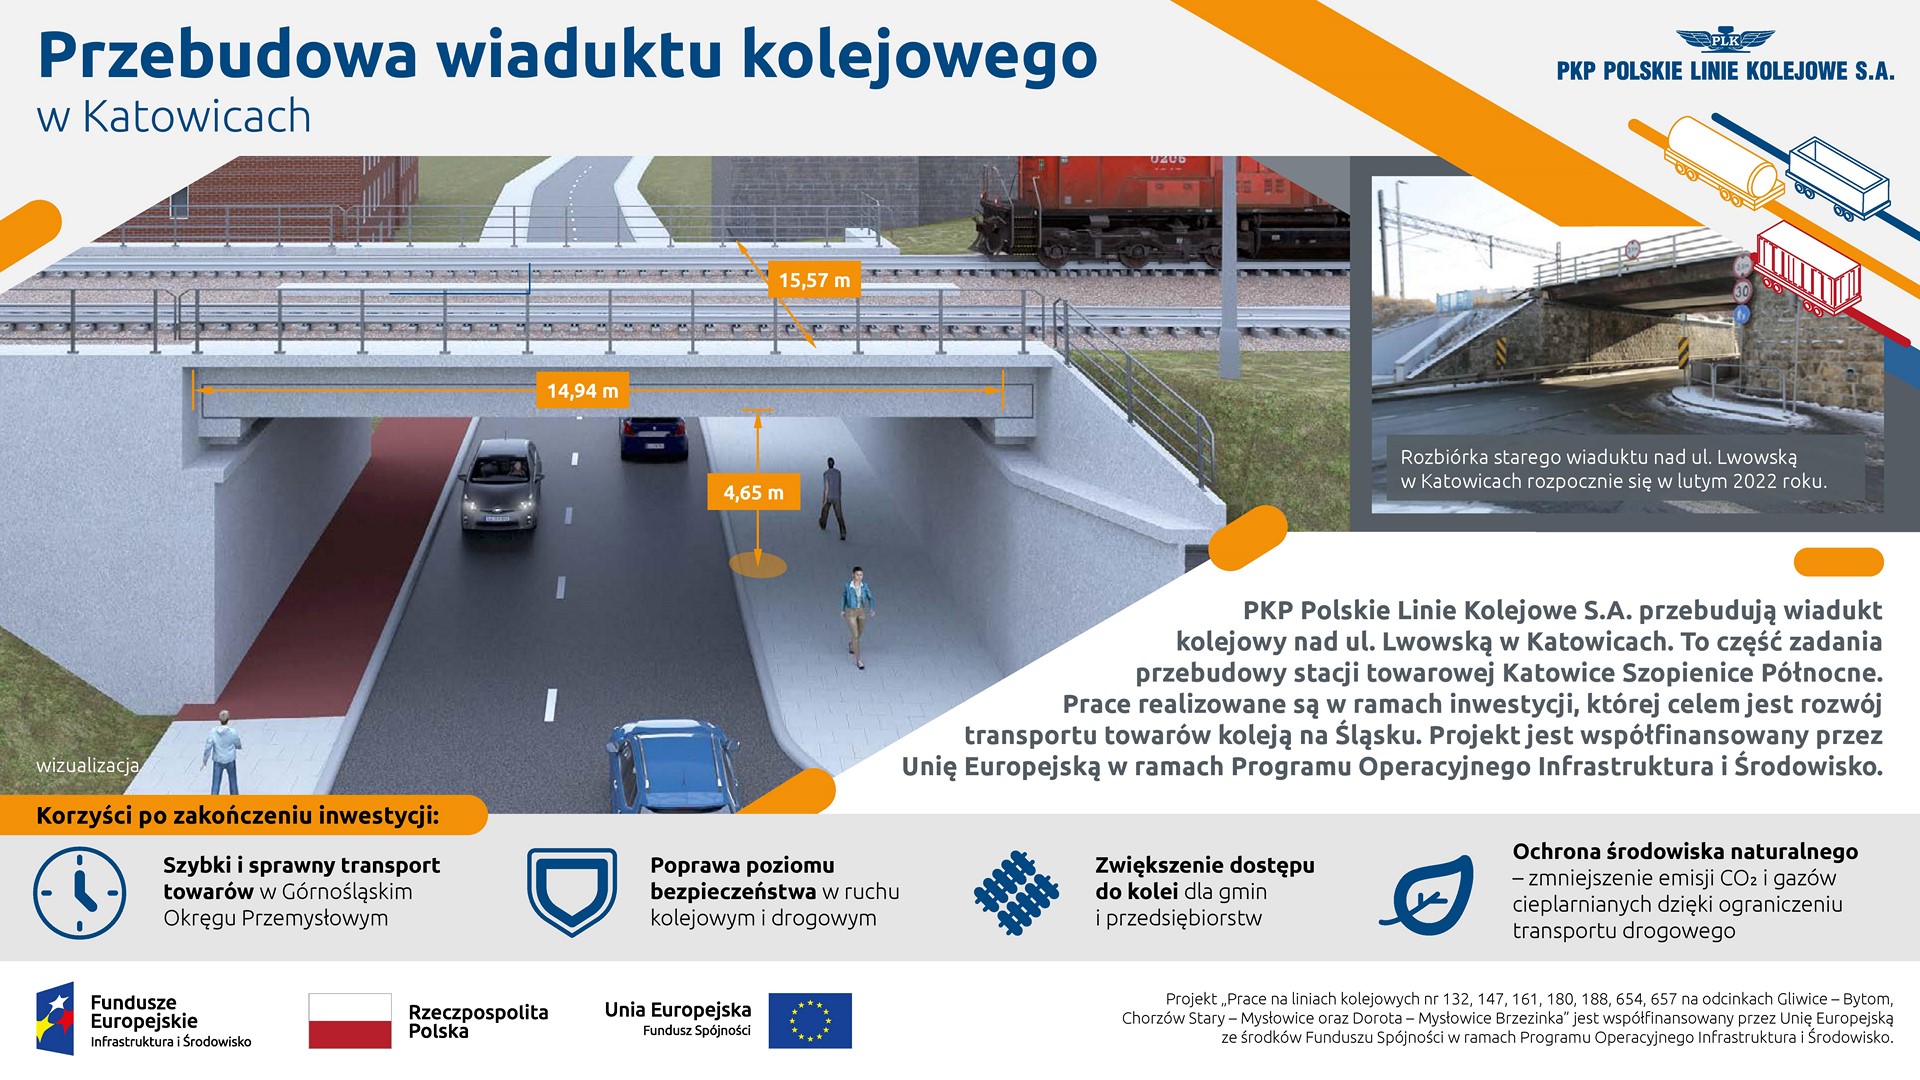 Infografika przedstawia wizualizacje wiaduktu kolejowo-drogowego. Po prawej stronie znajduje się zdjęcie przedstawiające aktualny stan wiaduktu. A poniżej nich omówione są korzyści z modernizacji.